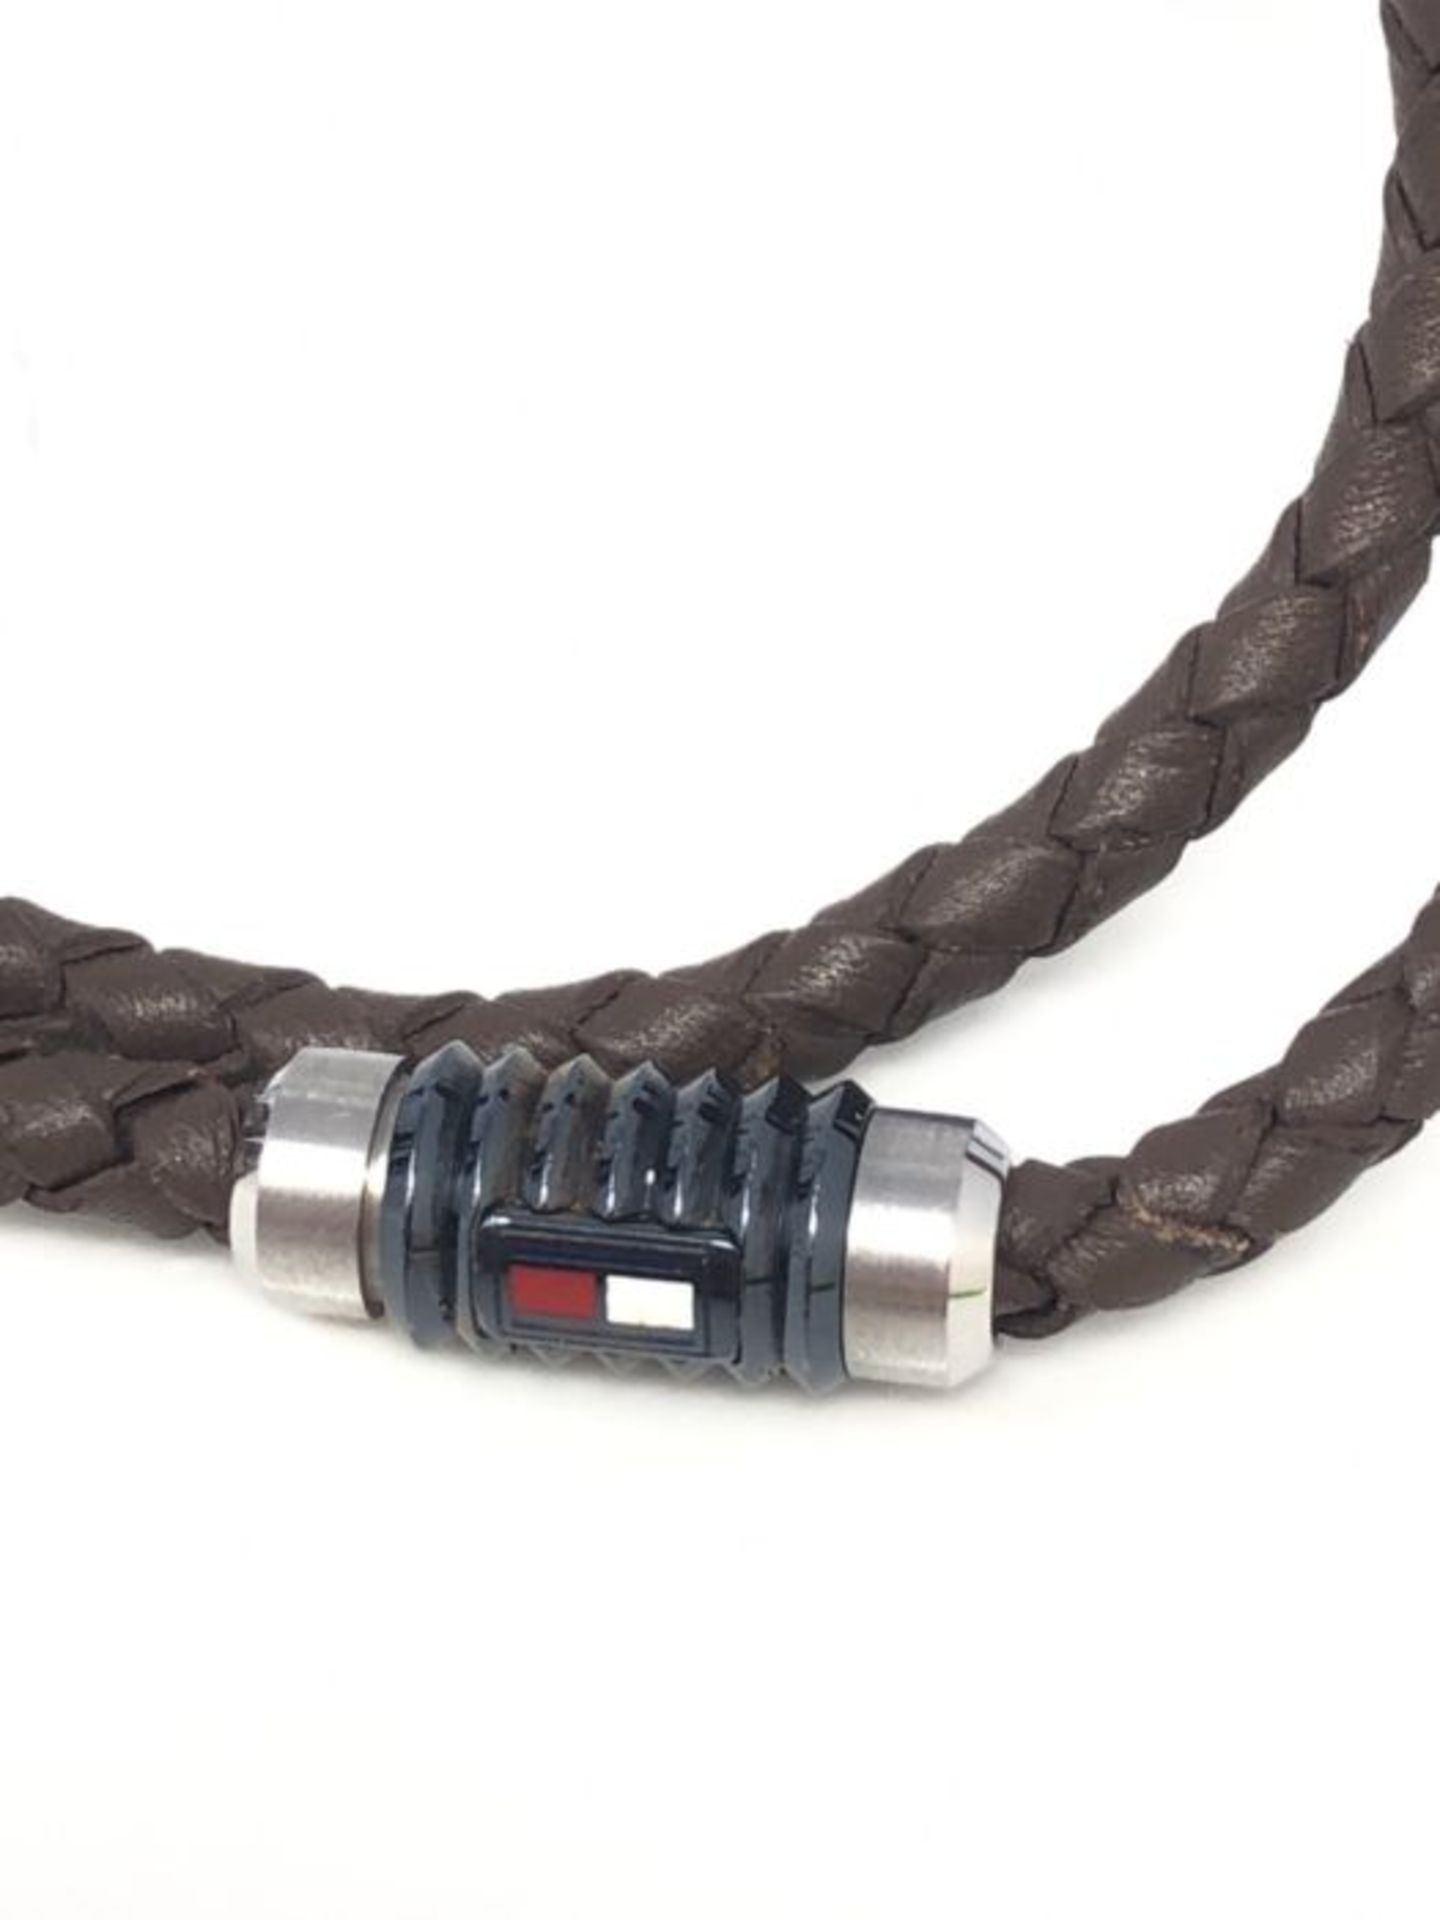 Tommy Hilfiger Men's Leather Bracelet - Image 3 of 3